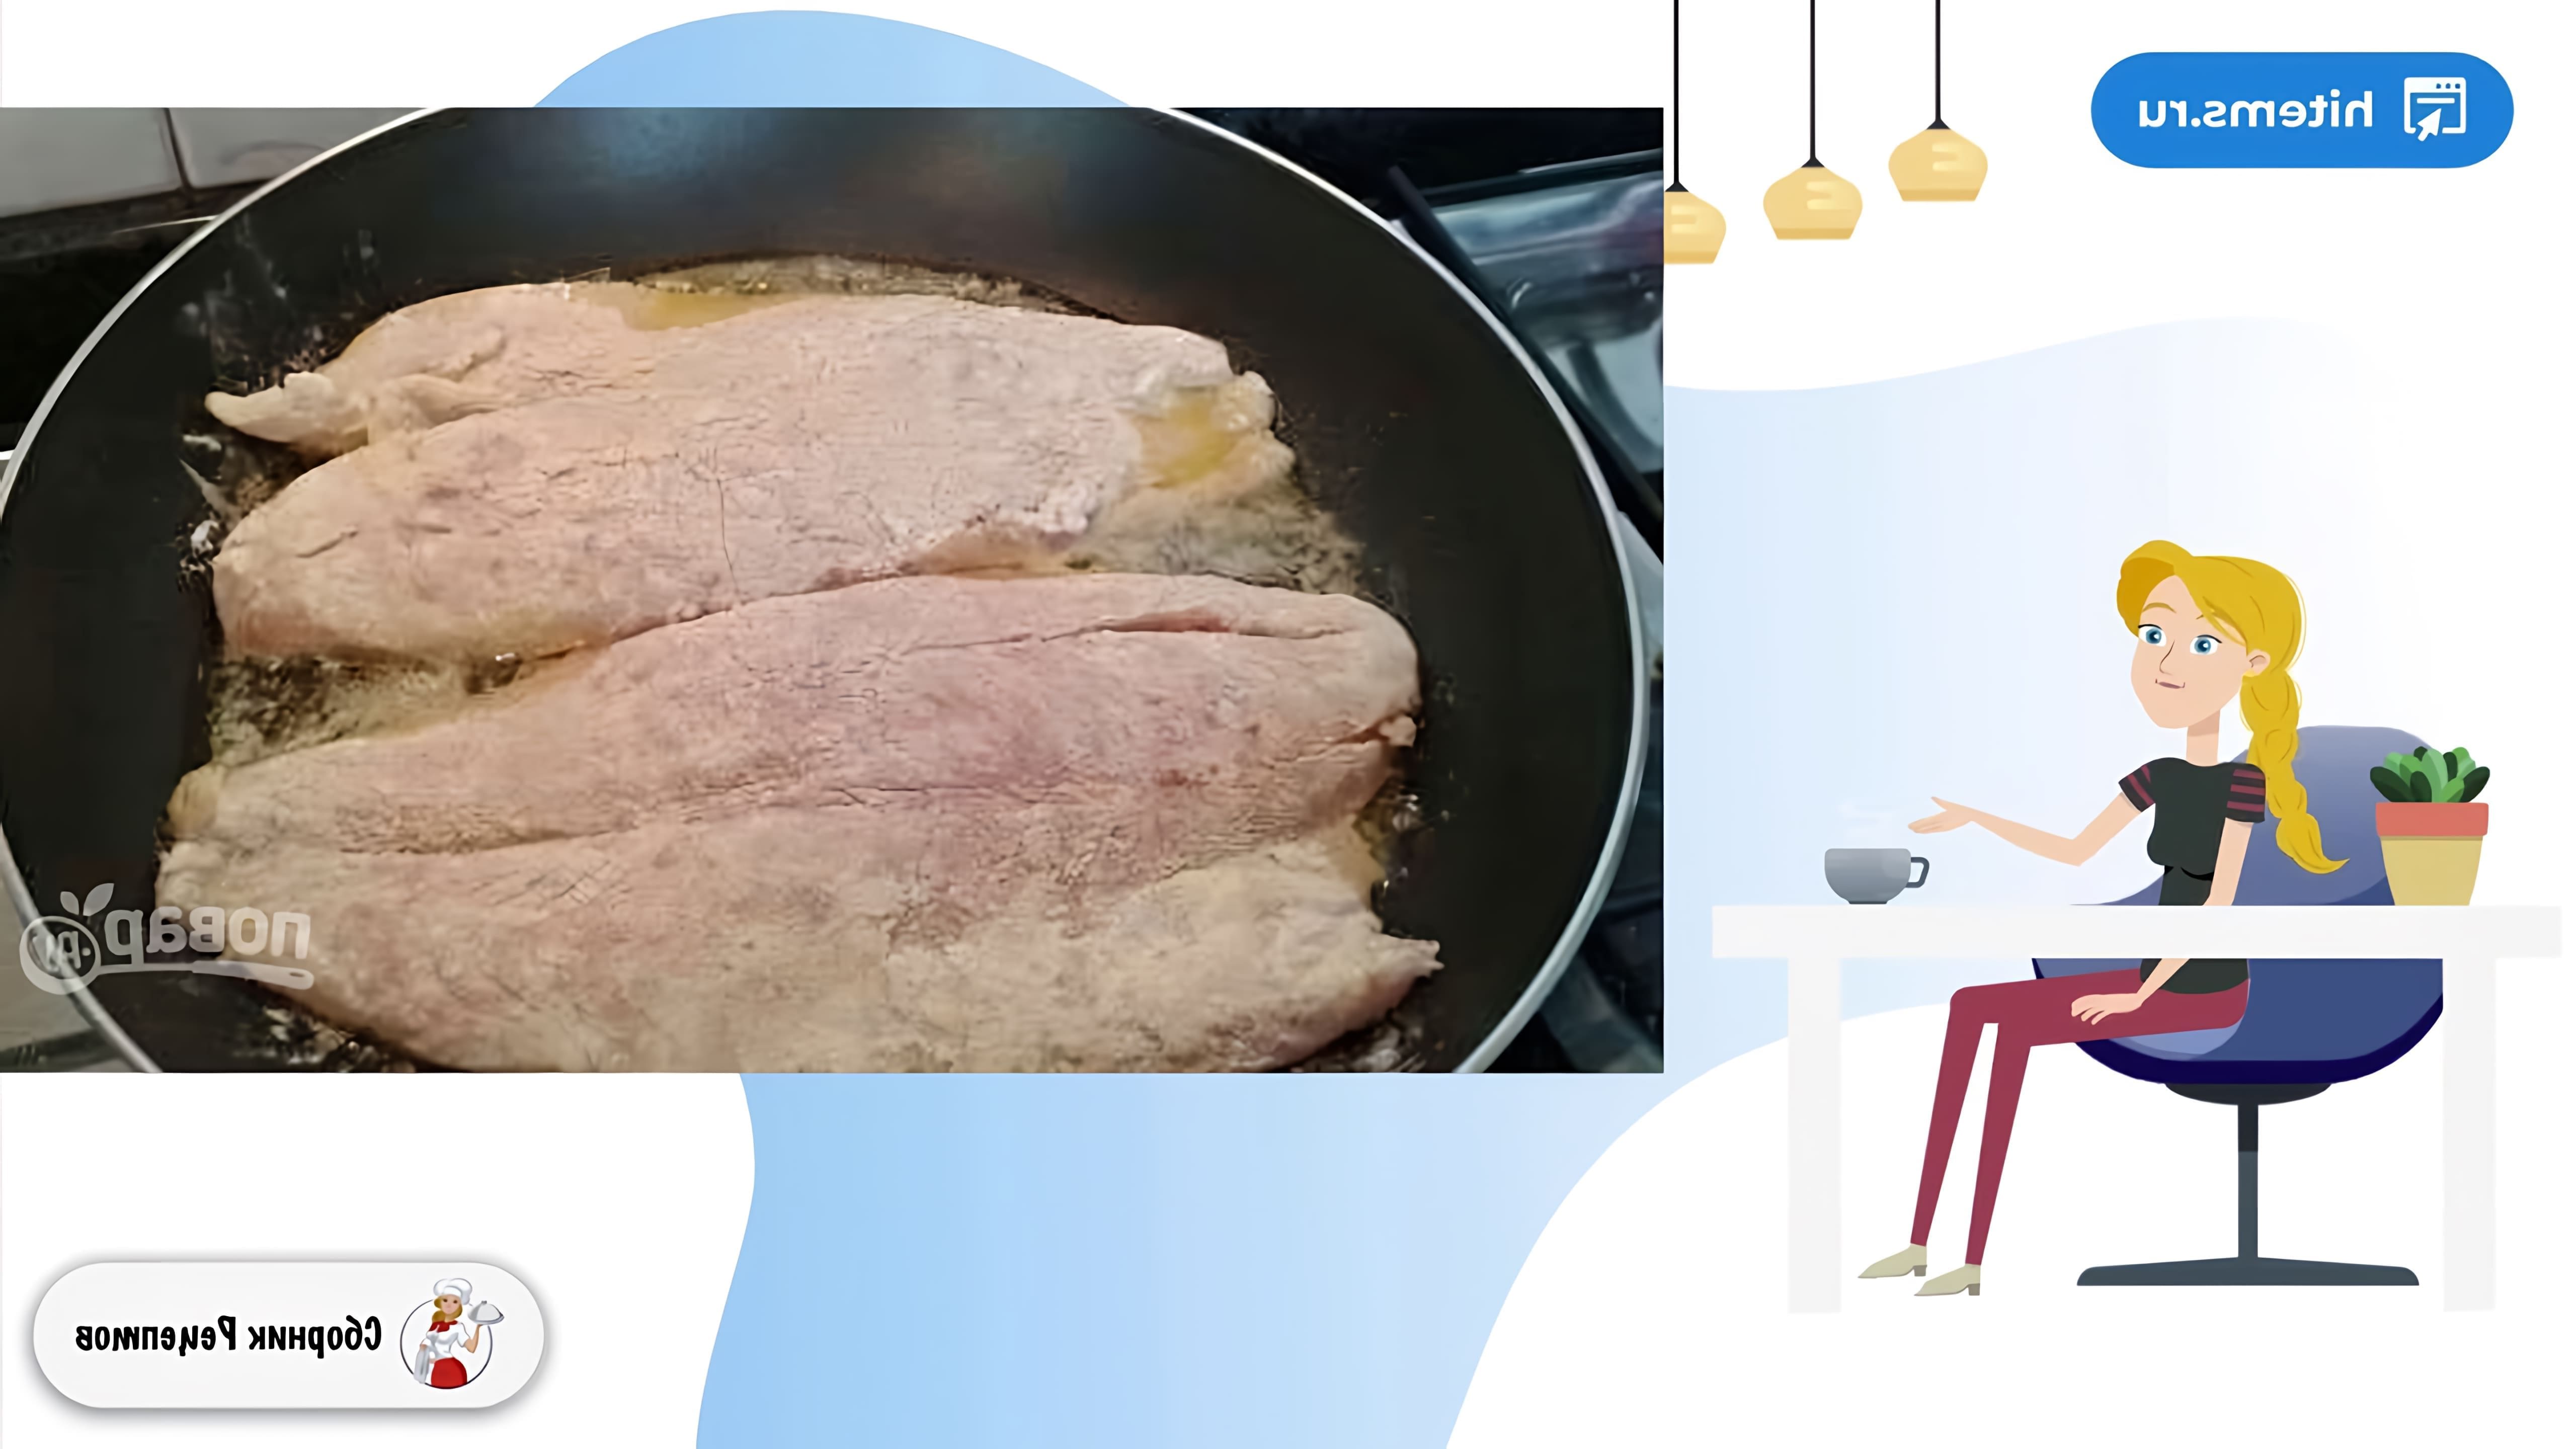 В этом видео рассказывается о том, как приготовить филе окуня на сковороде